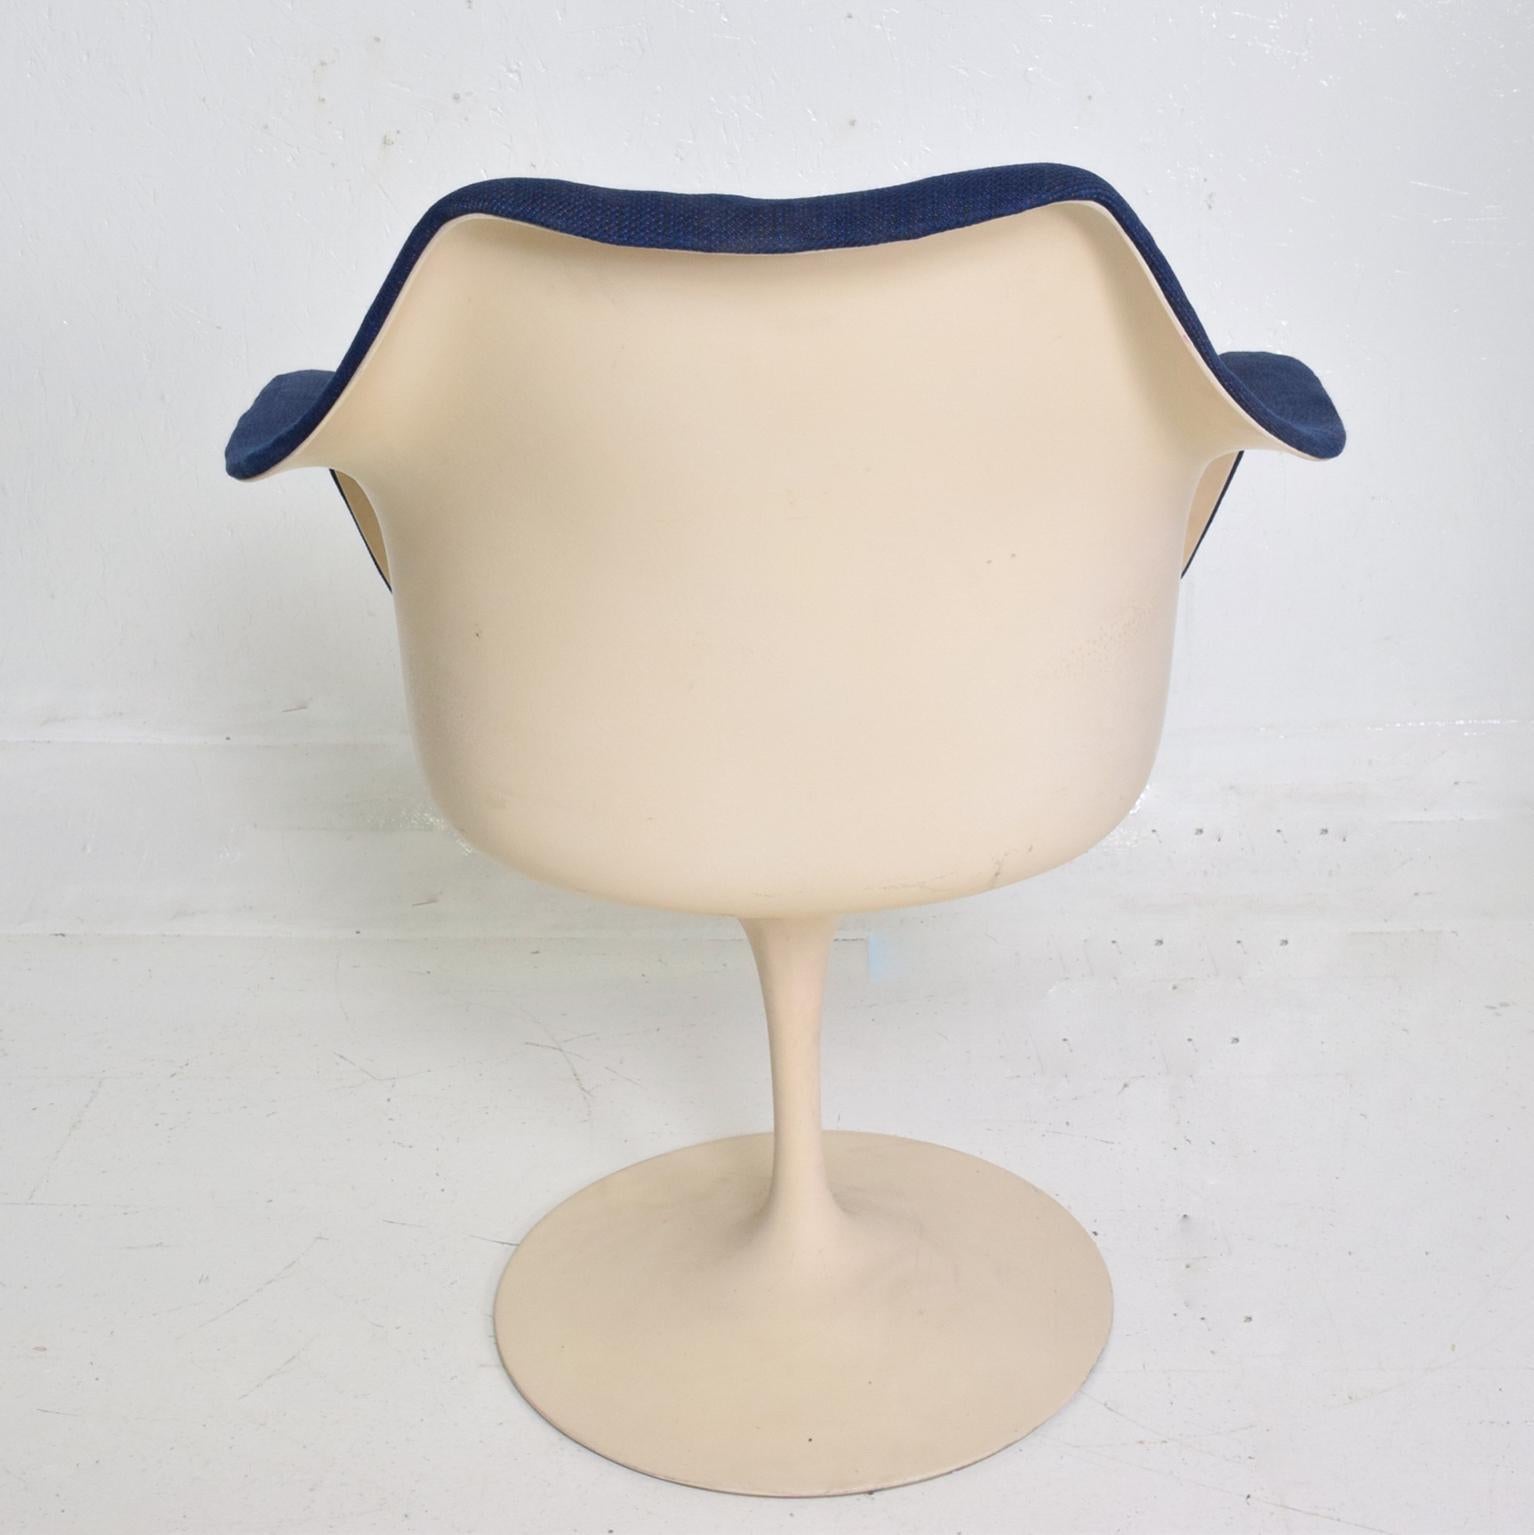 Knoll Tulip Chair 1956 by Eero Saarinen Mid-Century Modern 1